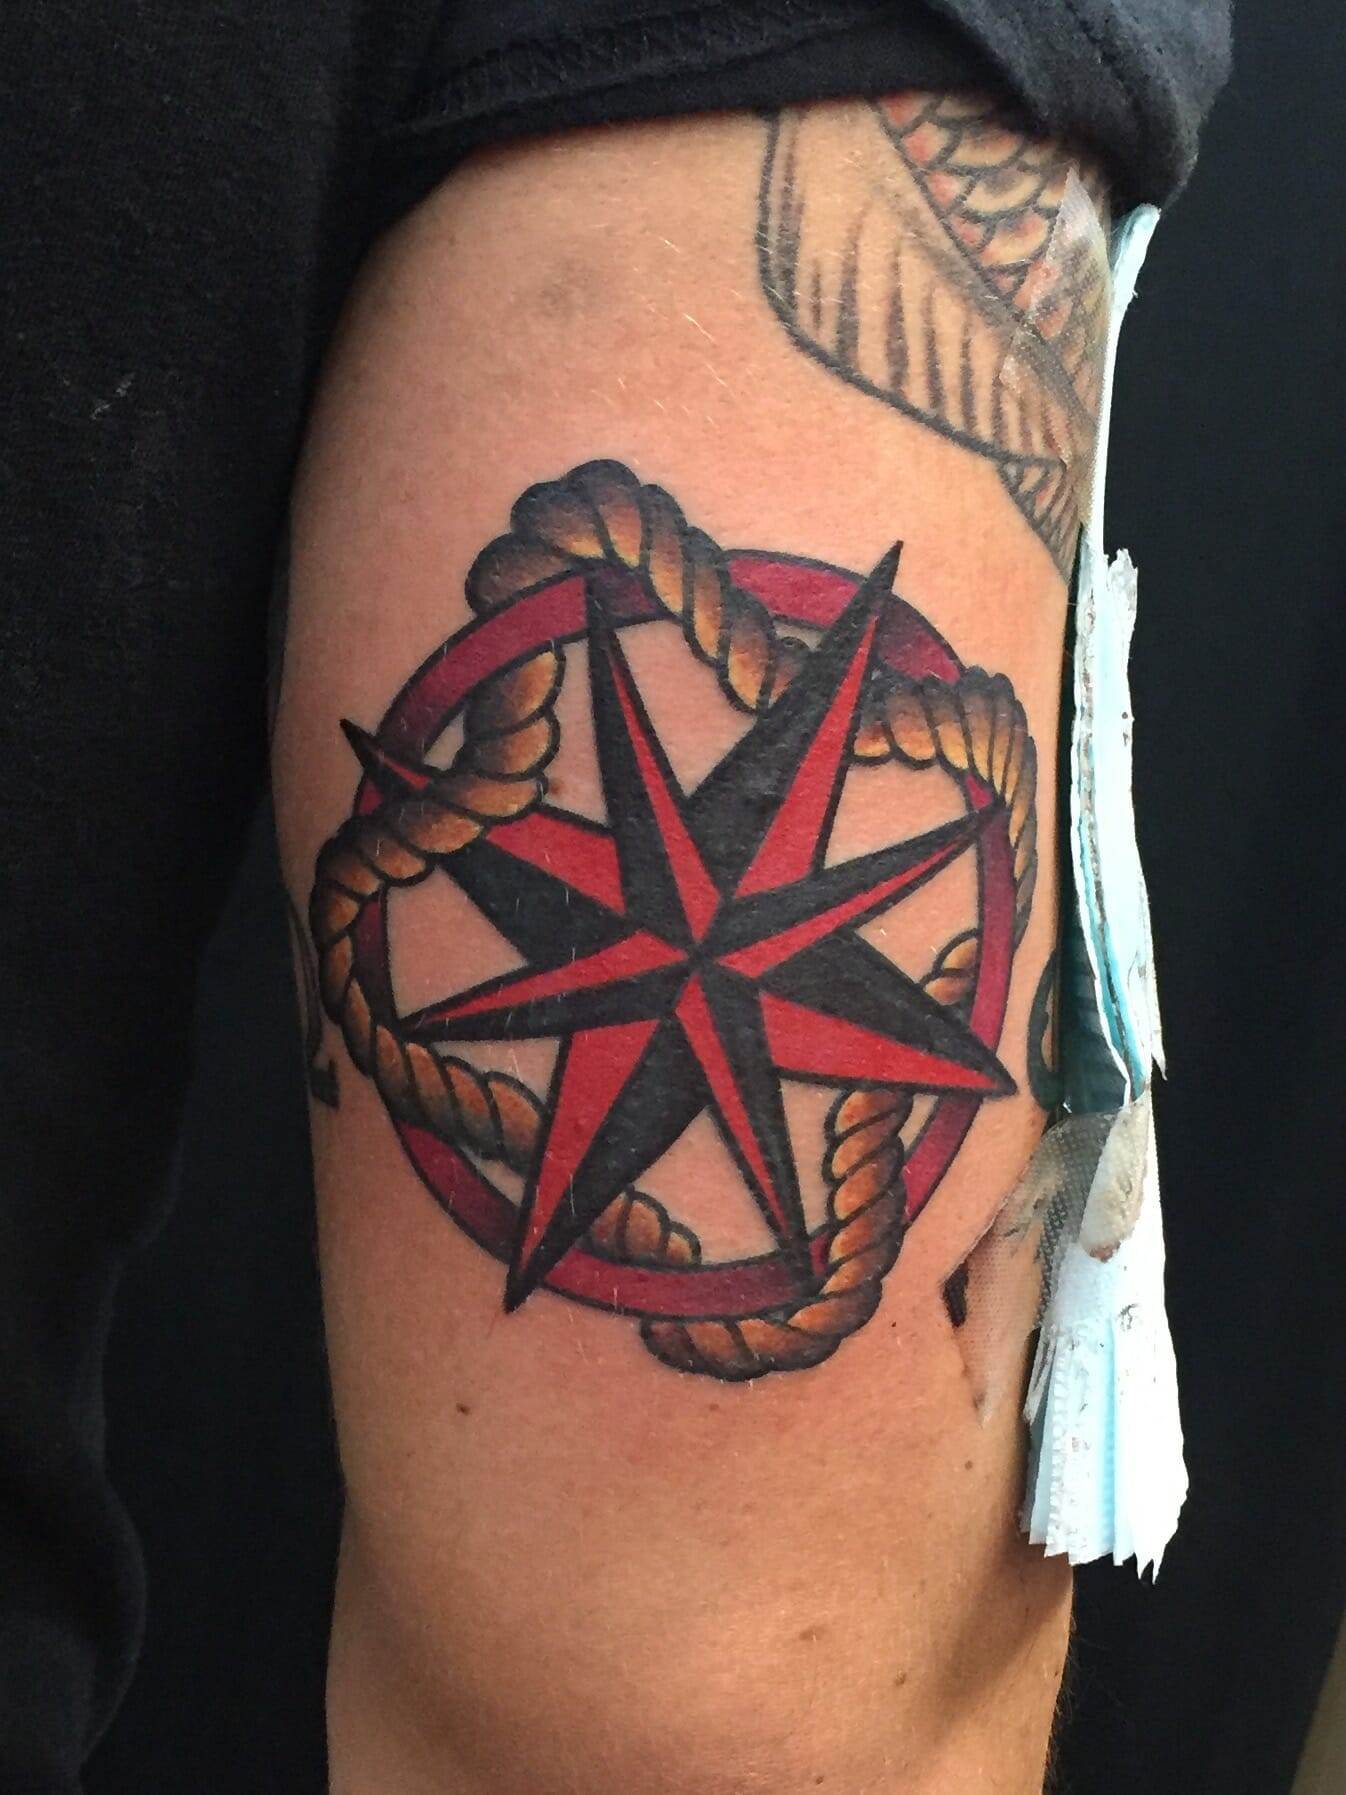 Nautical Star Tattoos | Tattoofilter